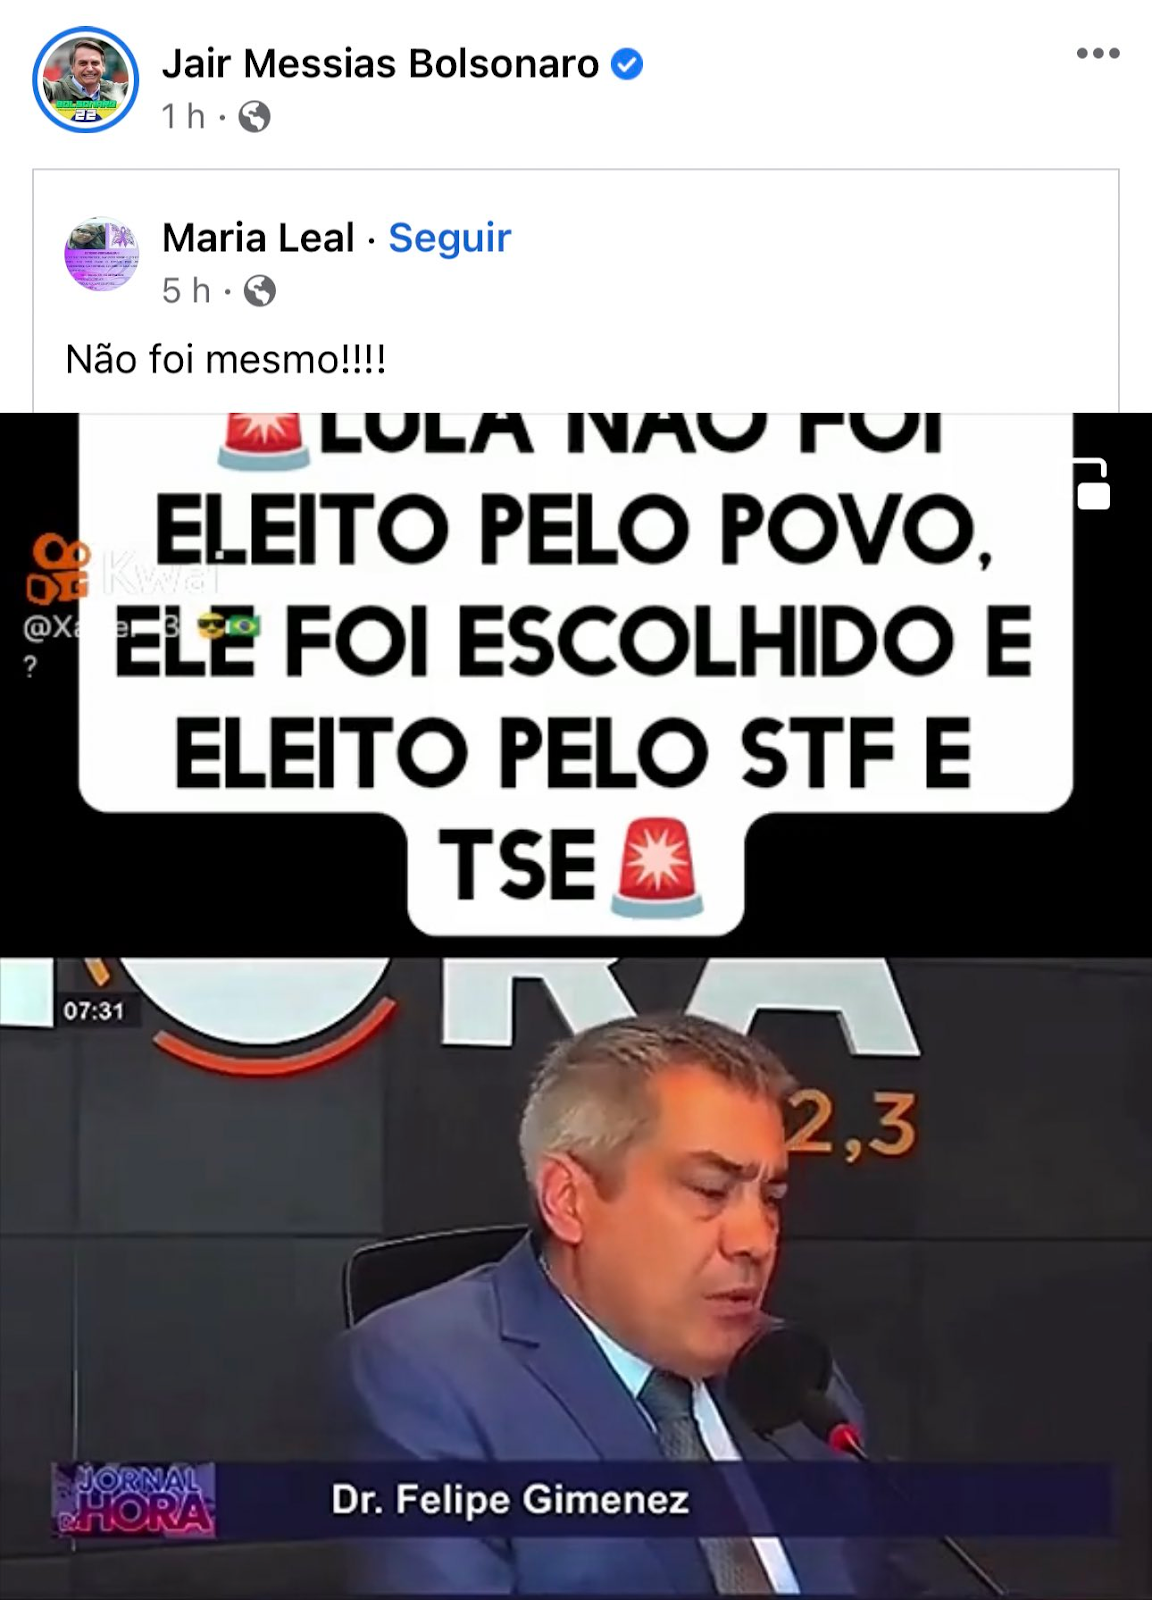 Print mostra vídeo compartilhado por Bolsonaro que traz legenda “Lula não foi eleito pelo povo, ele foi escolhido e eleito pelo STF e TSE”